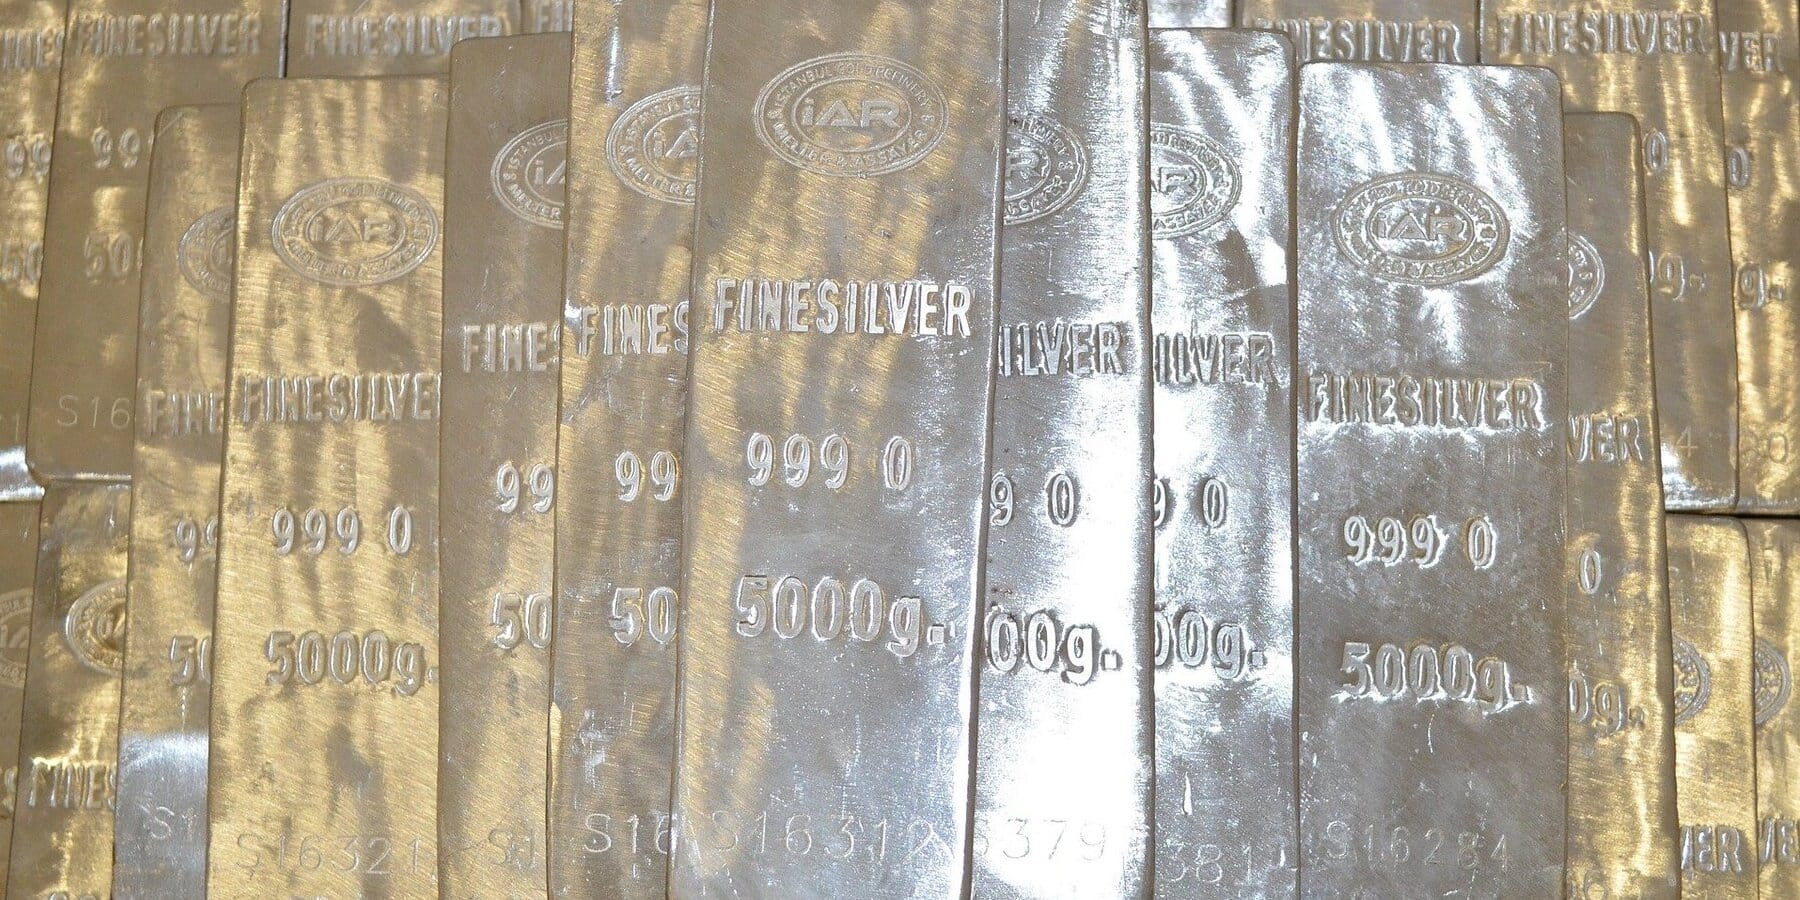 In Silber investieren - Silberbarren gestapelt